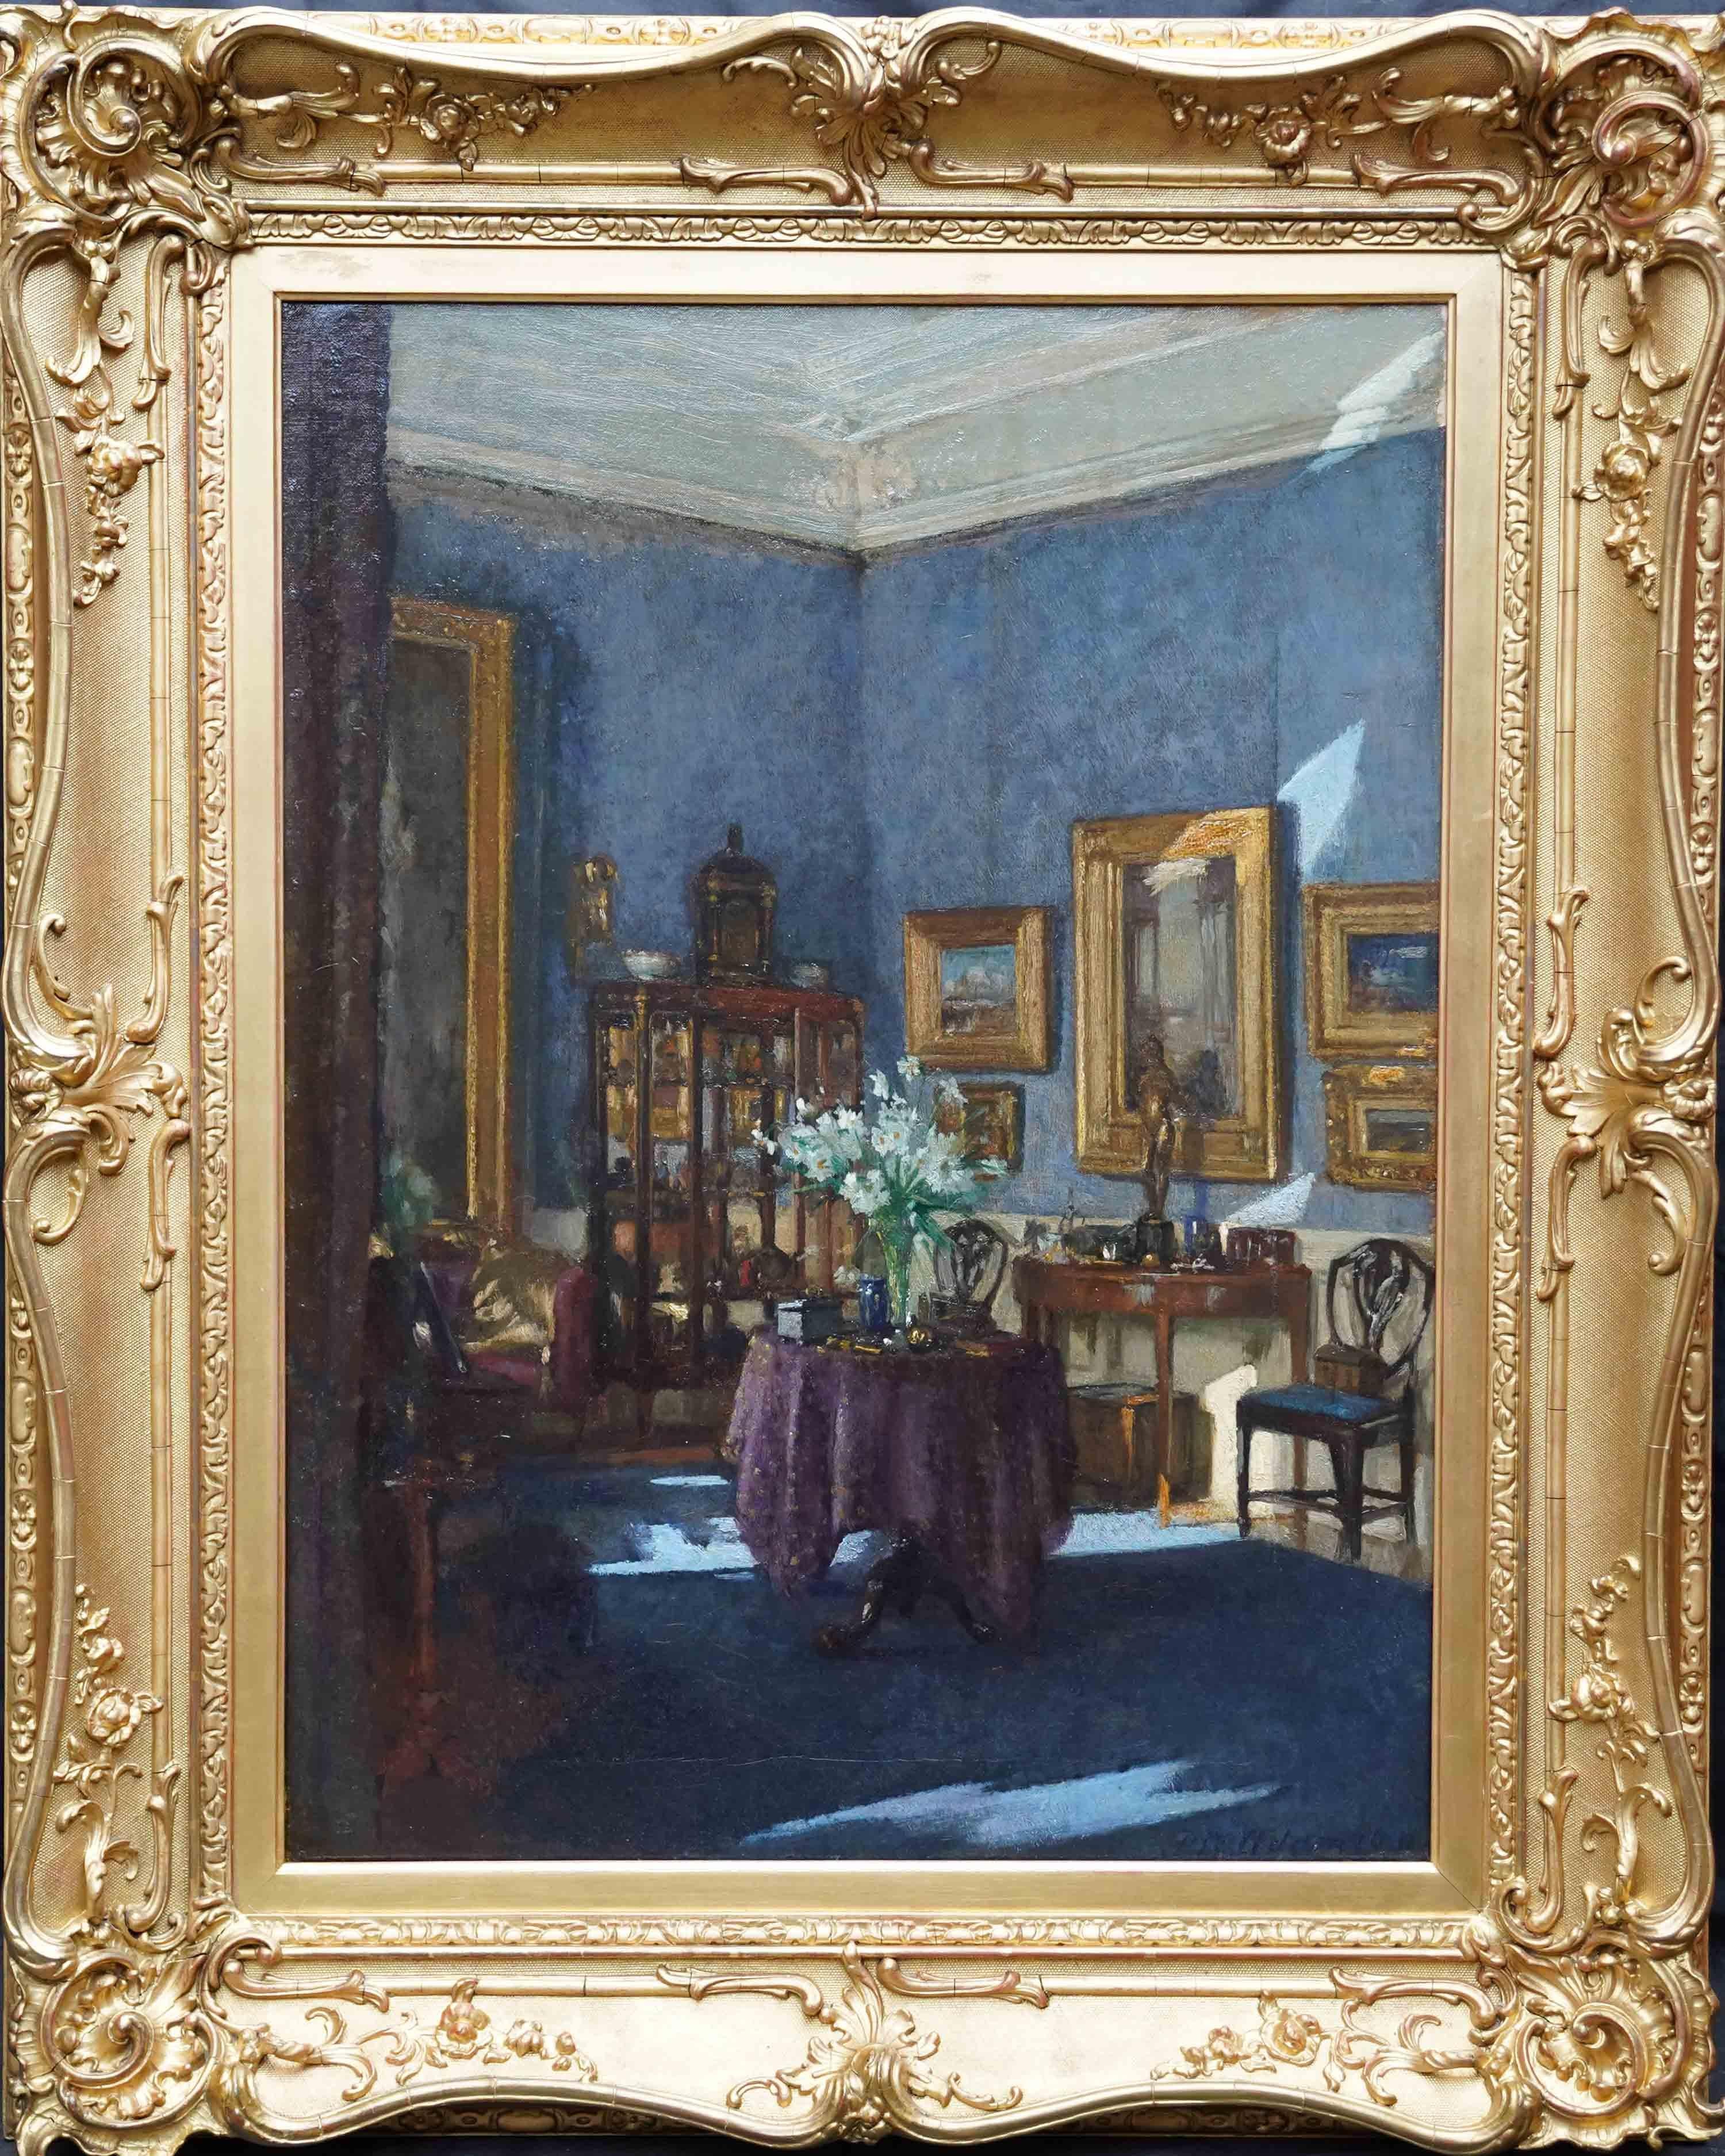 Interior Painting Patrick William Adam - The Drawing Room, écossais 1915 Royal Scot. Peinture à l'huile d'intérieur exposée à l'Académie